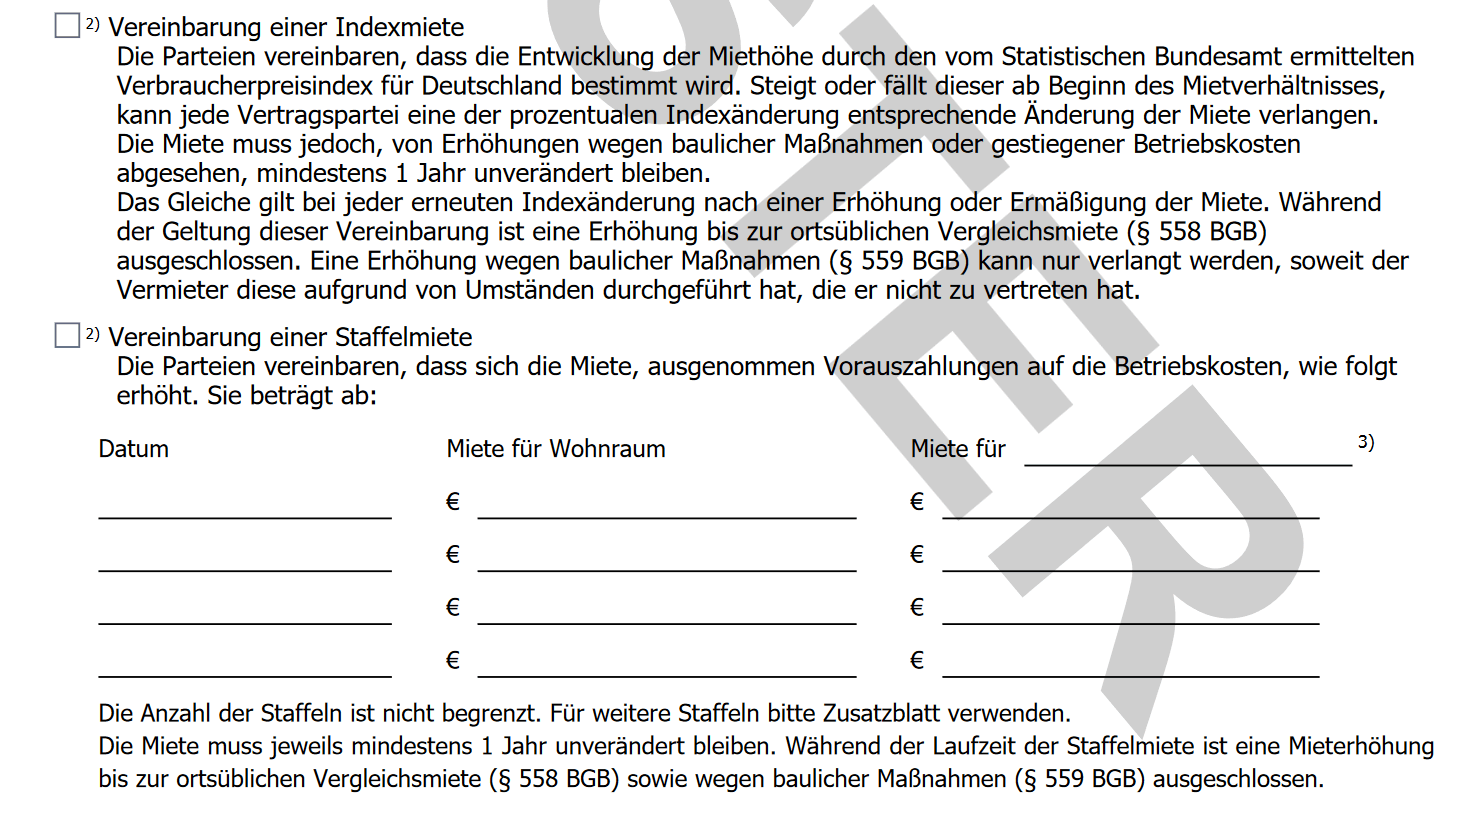 Mustervertrag von Haus und Grund mit Indexmietklausel und Staffelmietklausel.